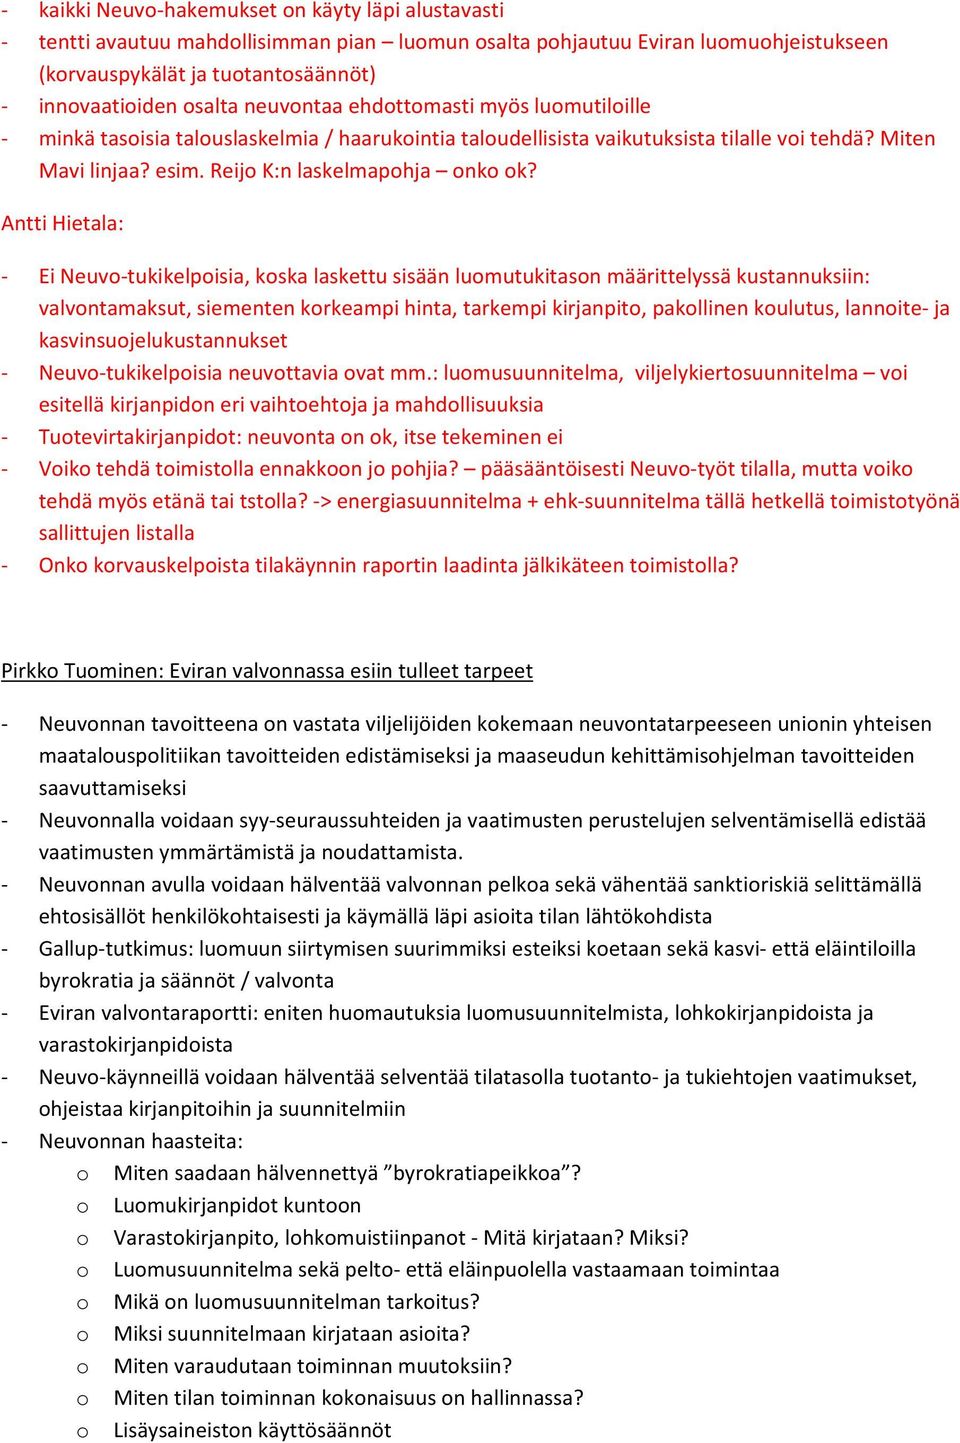 Antti Hietala: Ei Neuvo tukikelpoisia, koska laskettu sisään luomutukitason määrittelyssä kustannuksiin: valvontamaksut, siementen korkeampi hinta, tarkempi kirjanpito, pakollinen koulutus, lannoite